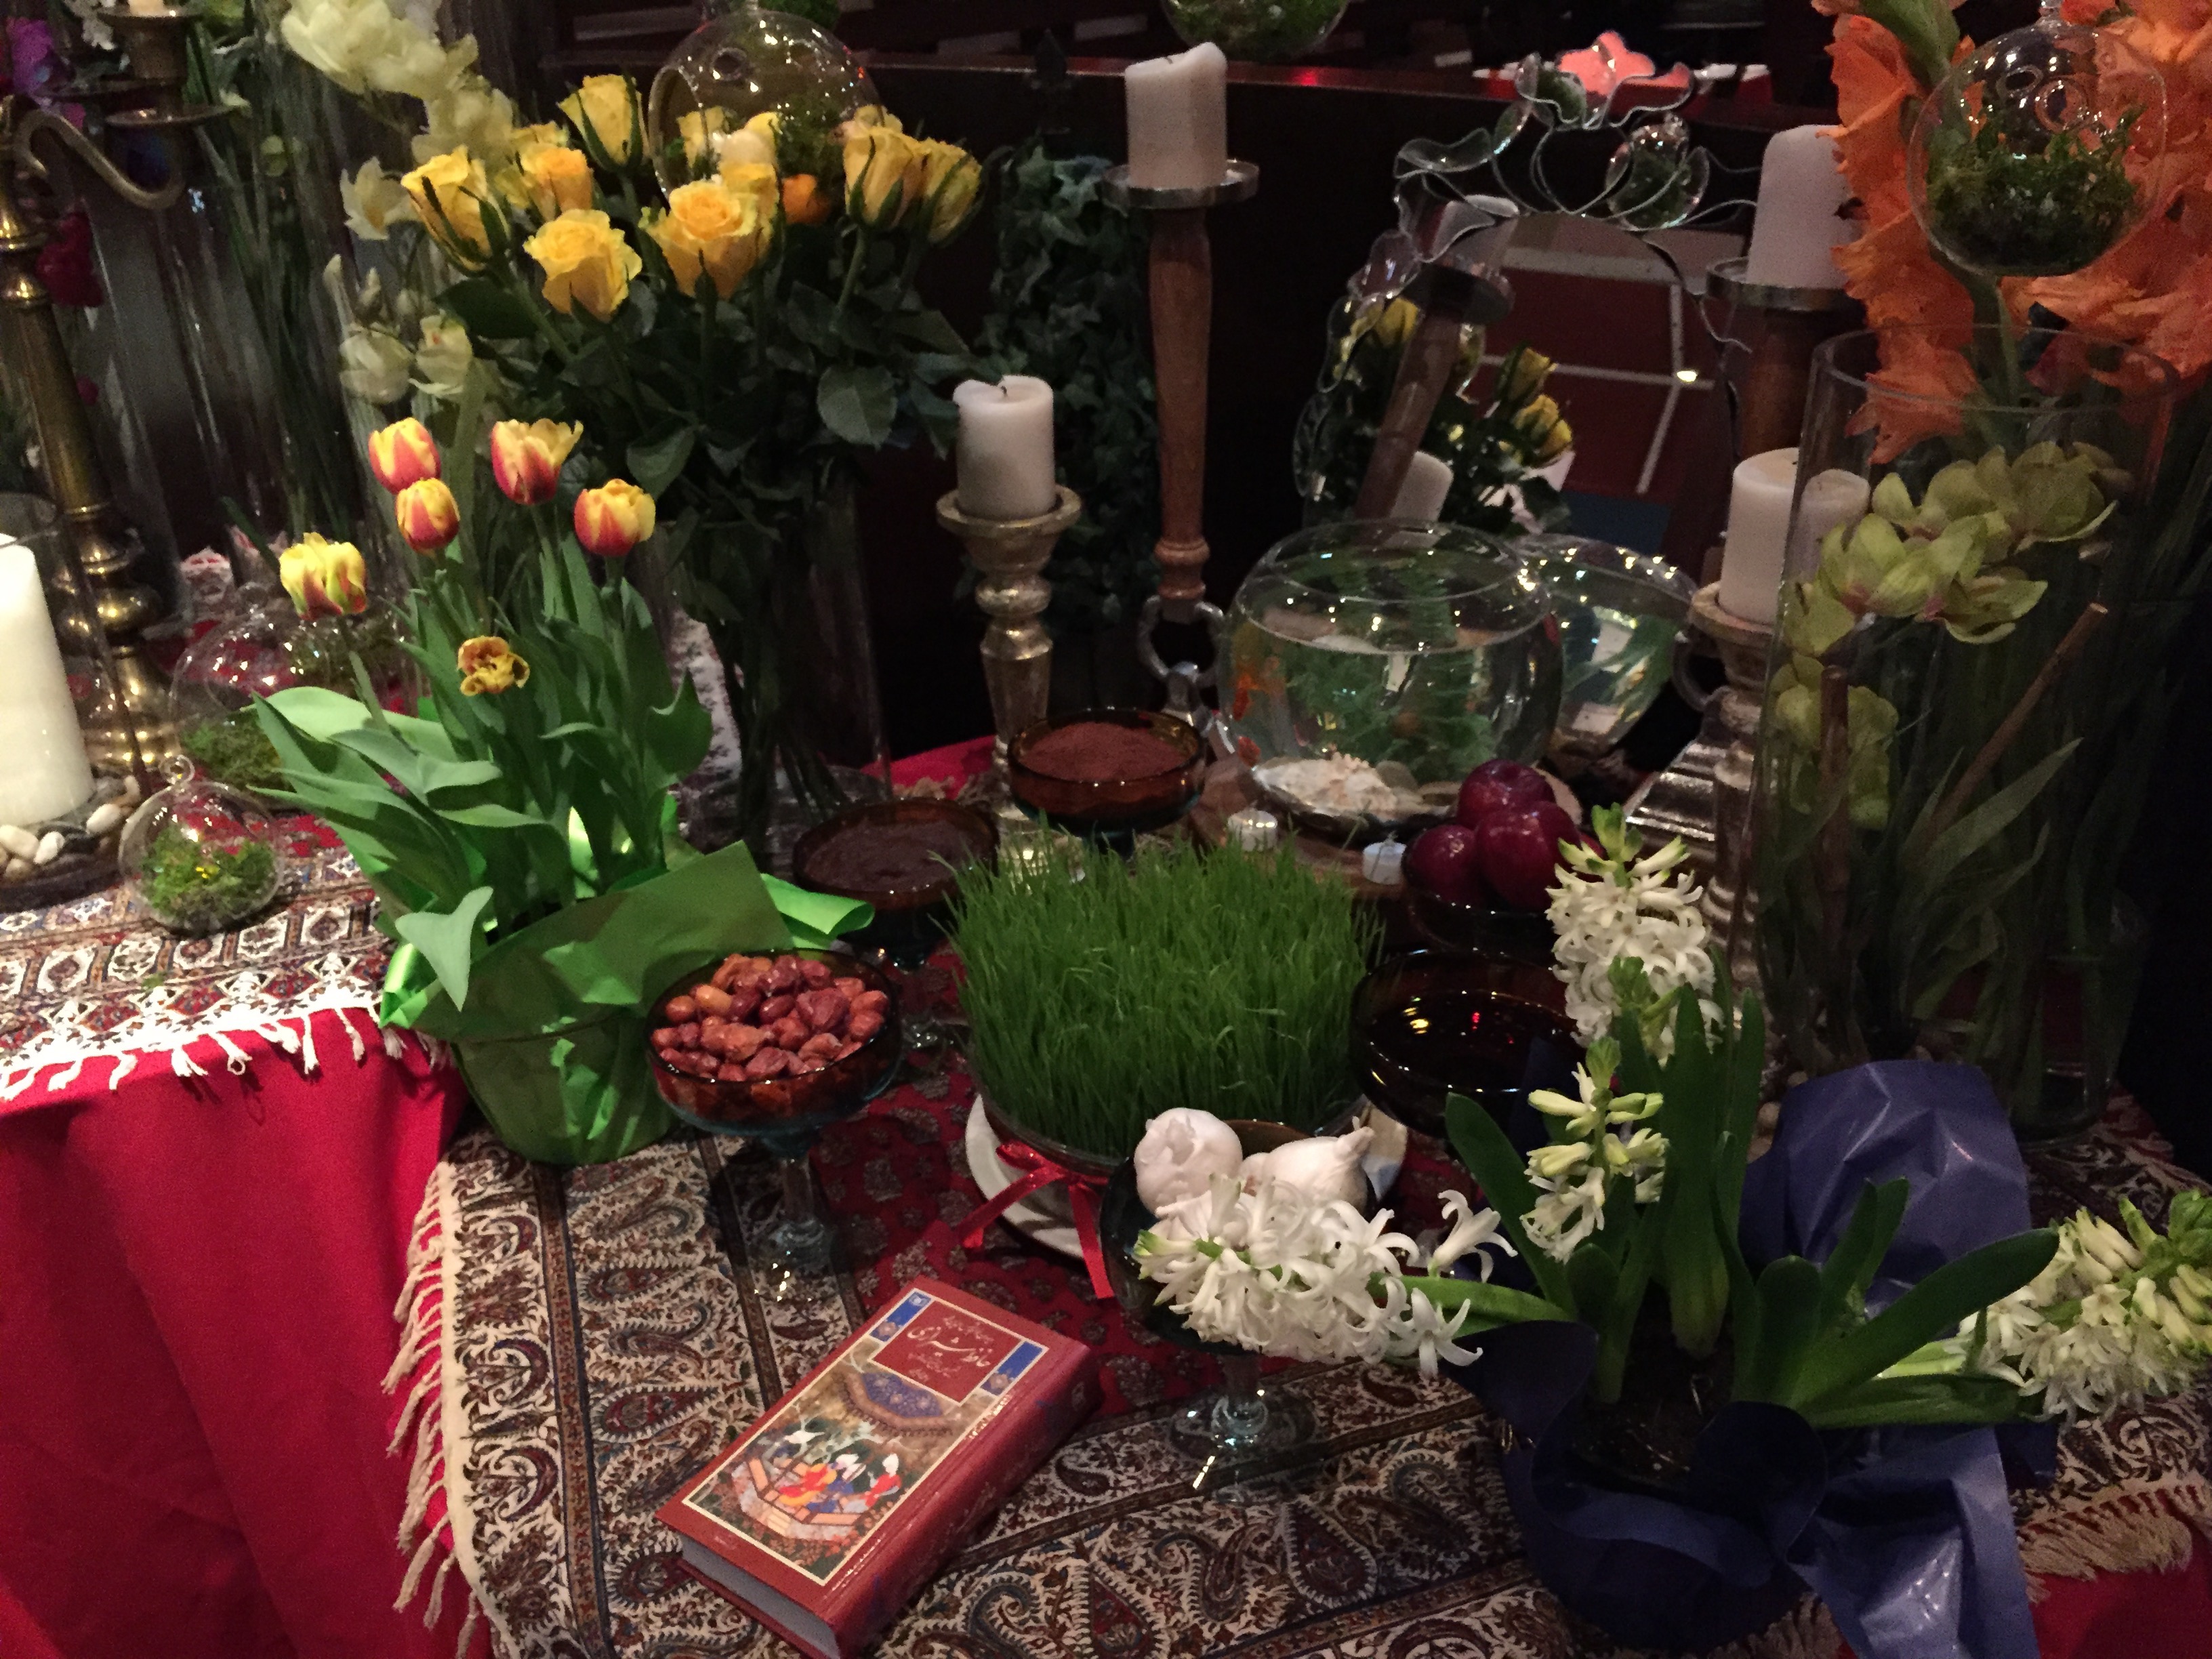 Haft-Seen display for Nowruz